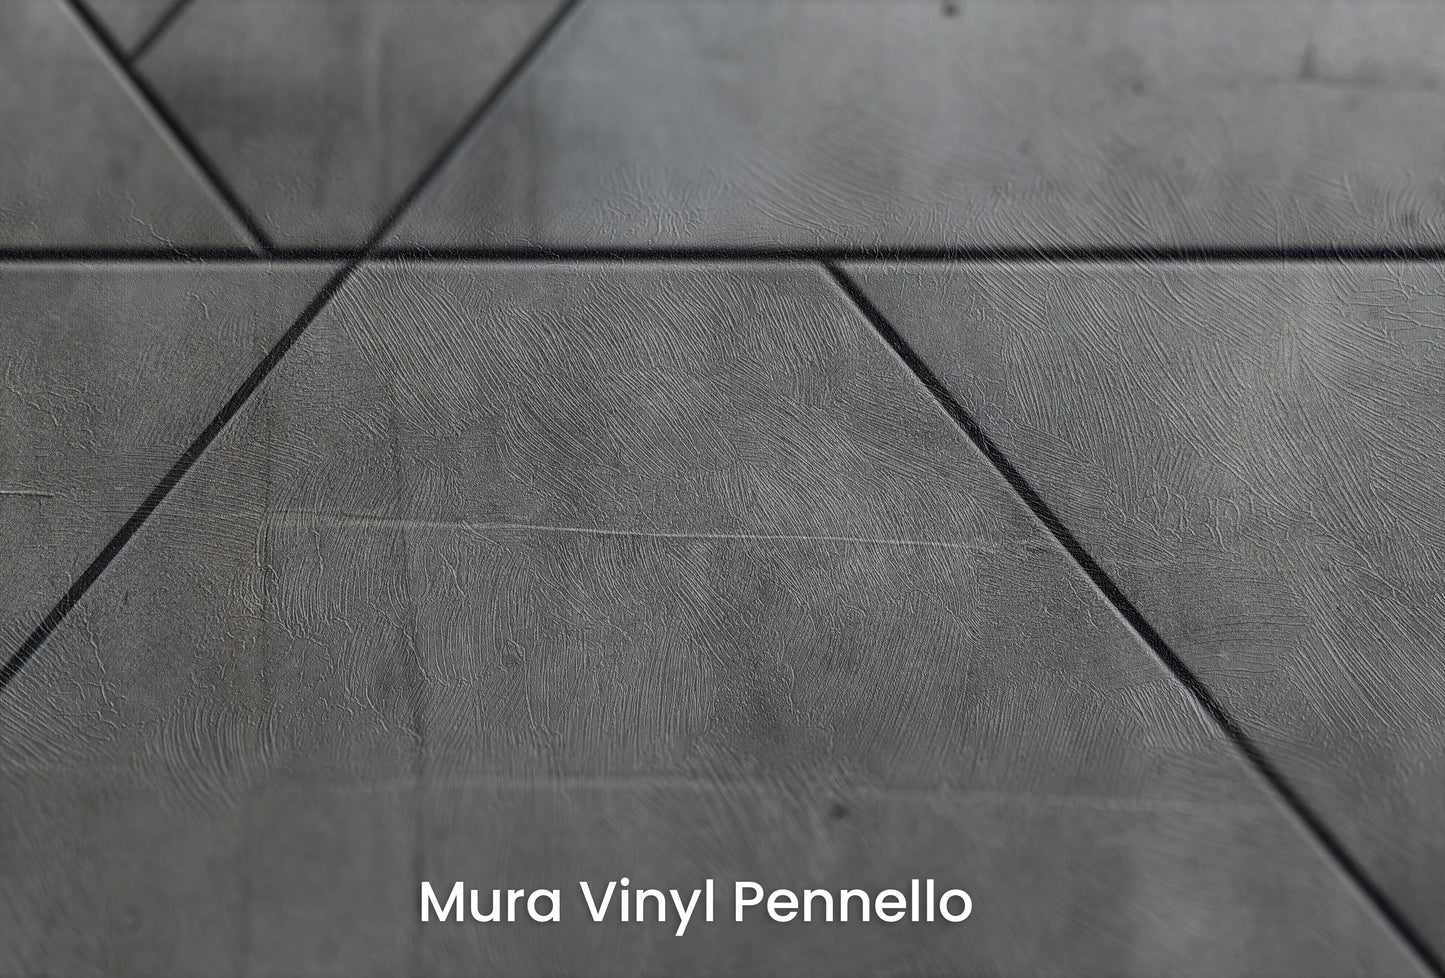 Zbliżenie na artystyczną fototapetę o nazwie Linear Intersection na podłożu Mura Vinyl Pennello - faktura pociągnięć pędzla malarskiego.